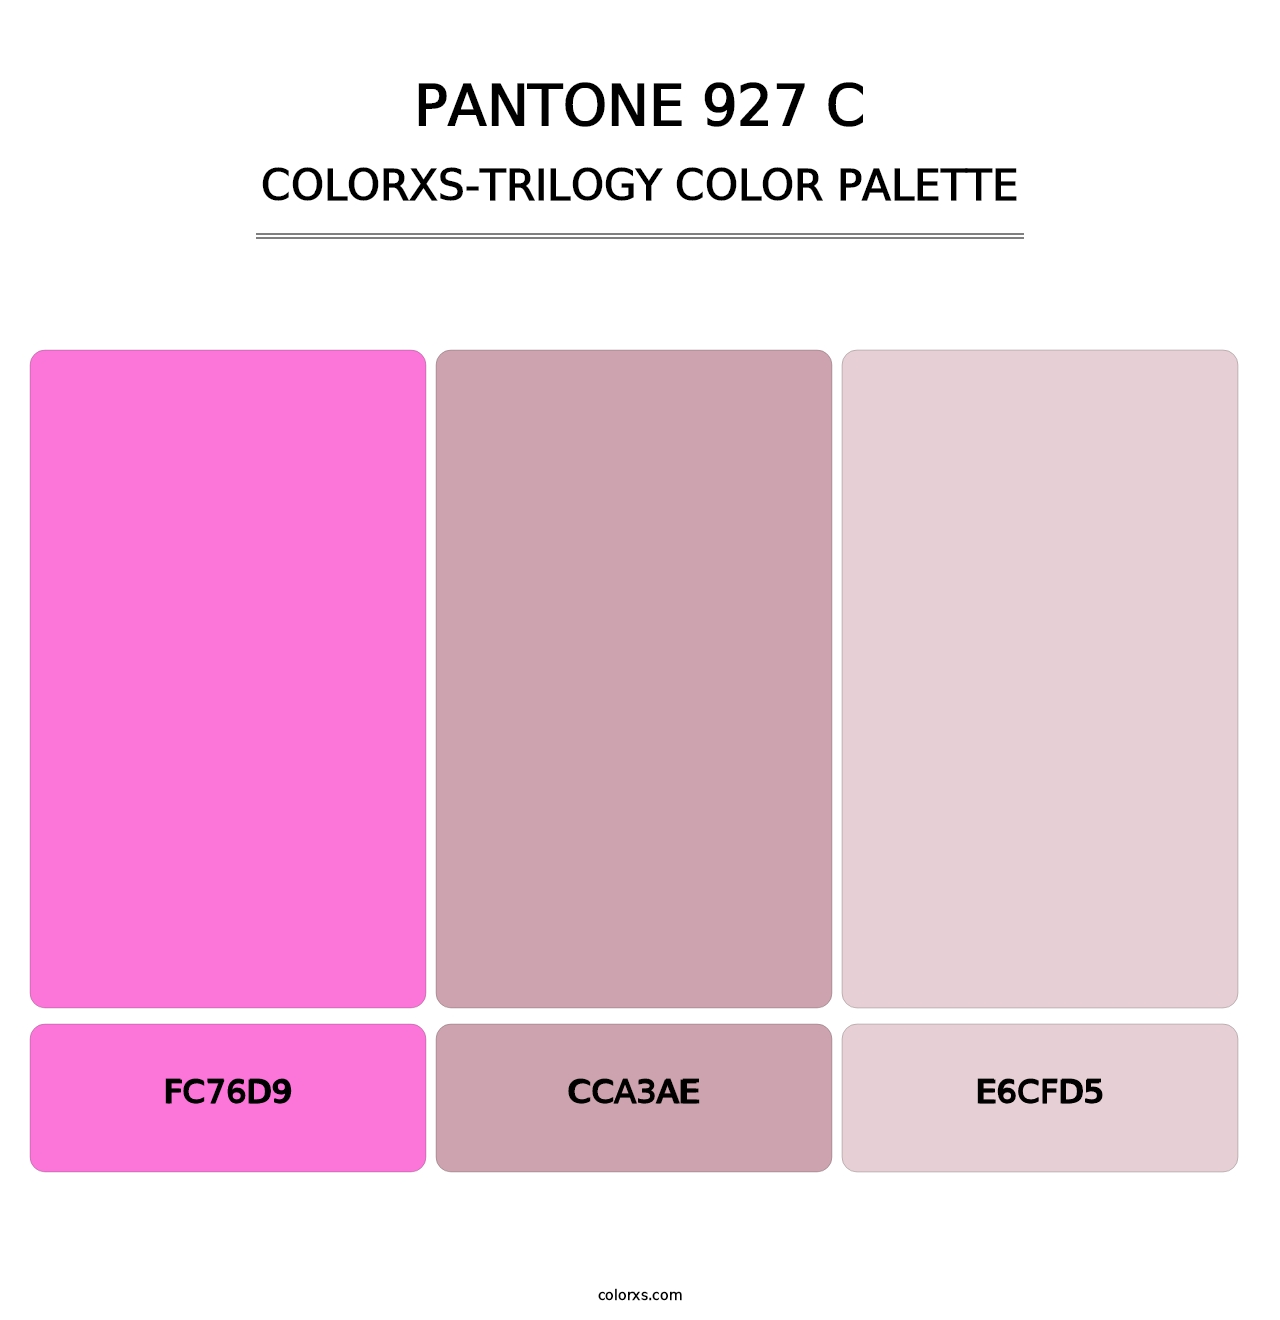 PANTONE 927 C - Colorxs Trilogy Palette